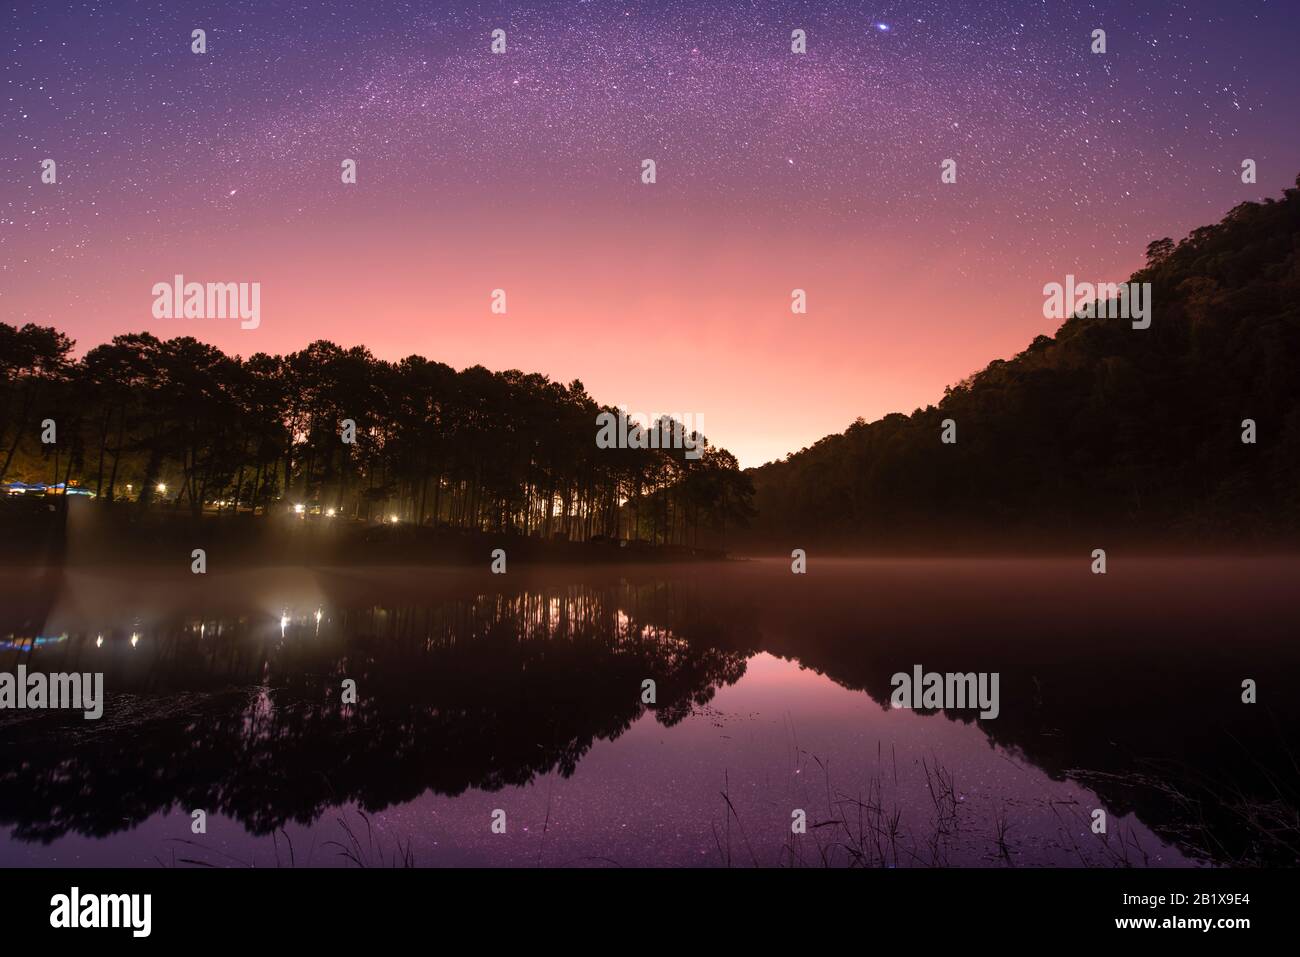 Stars night sky at Pang Ung lake, Pang Ung Mae Hong Son province, North of Thailand Stock Photo